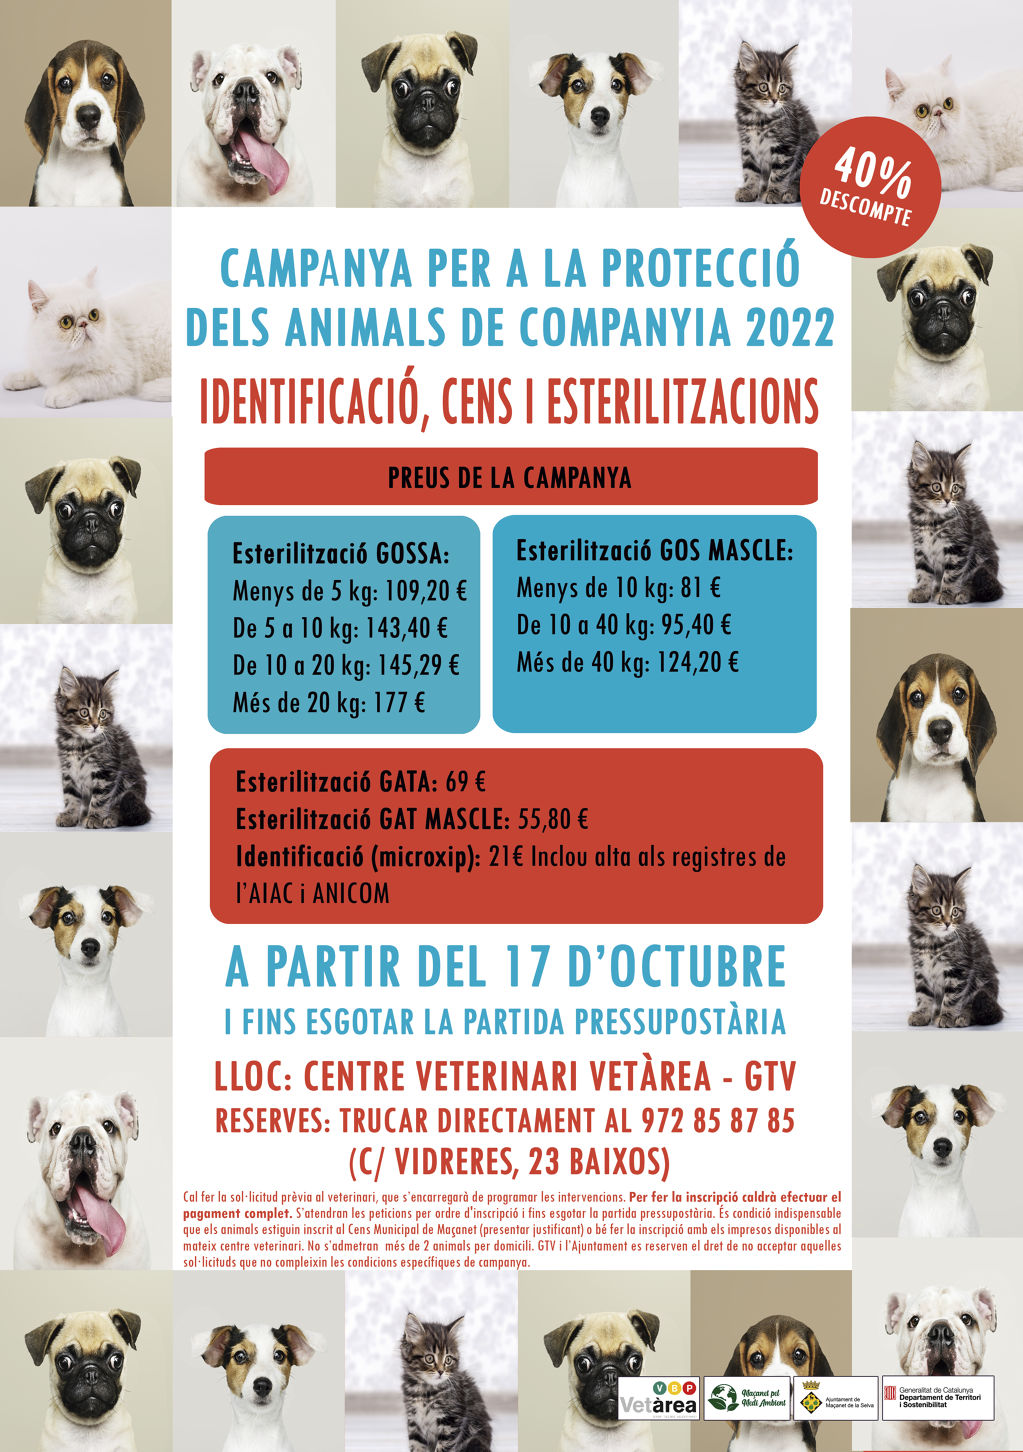 Campanya per a la protecció d'animals de companyia: a partir del 17 d'octubre - 8b84a-esterilitzacio.jpg